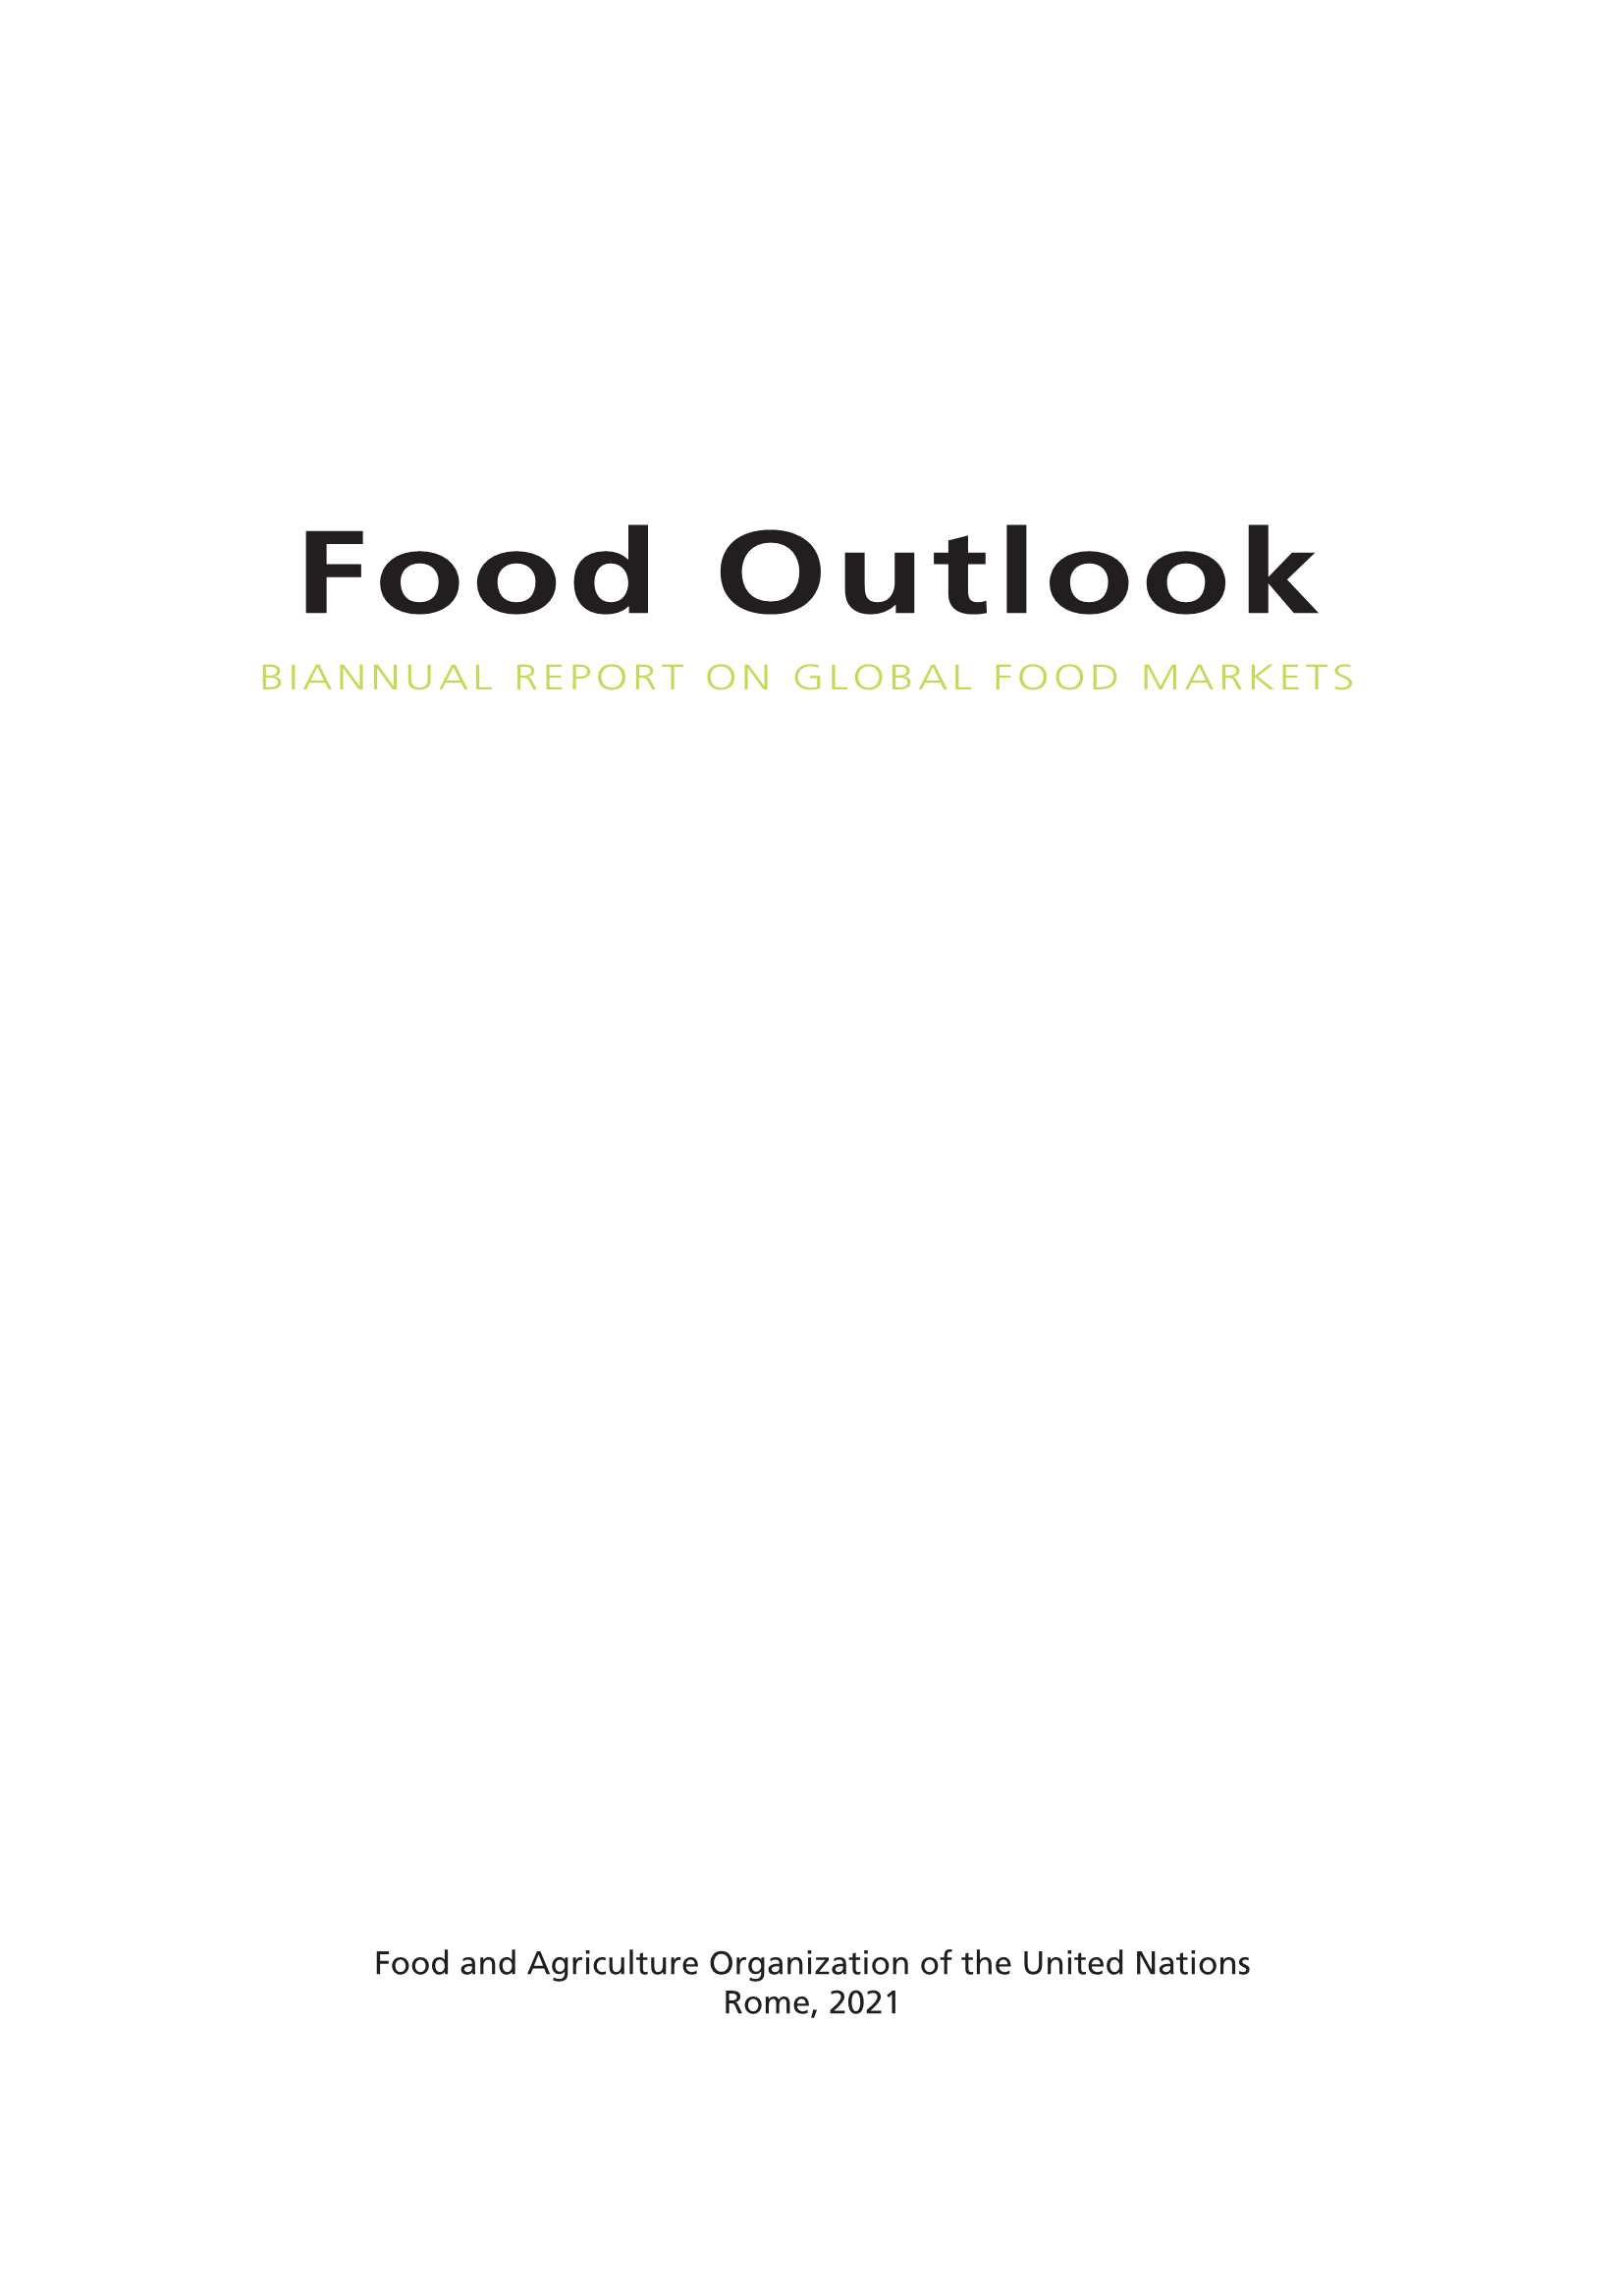 粮食展望报告：全球粮食进口费用将在2021年创历史新高-2021.11-112页